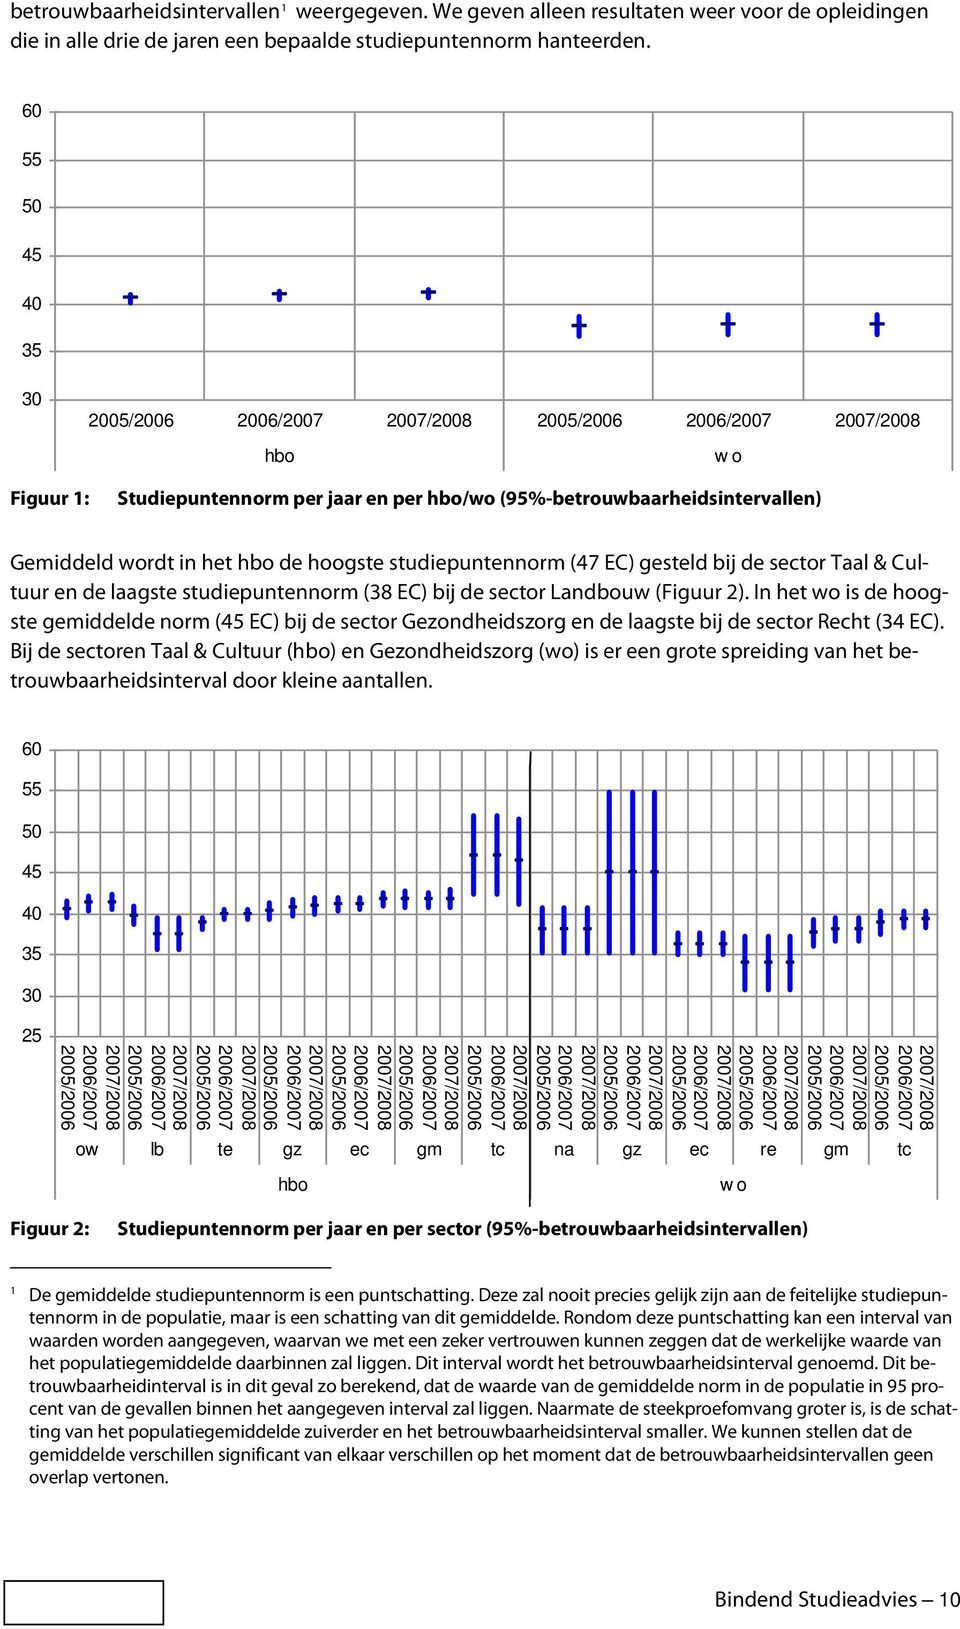 Taal & Cultuur en de laagste studiepuntennorm (38 EC) bij de sector Landbouw (Figuur 2).